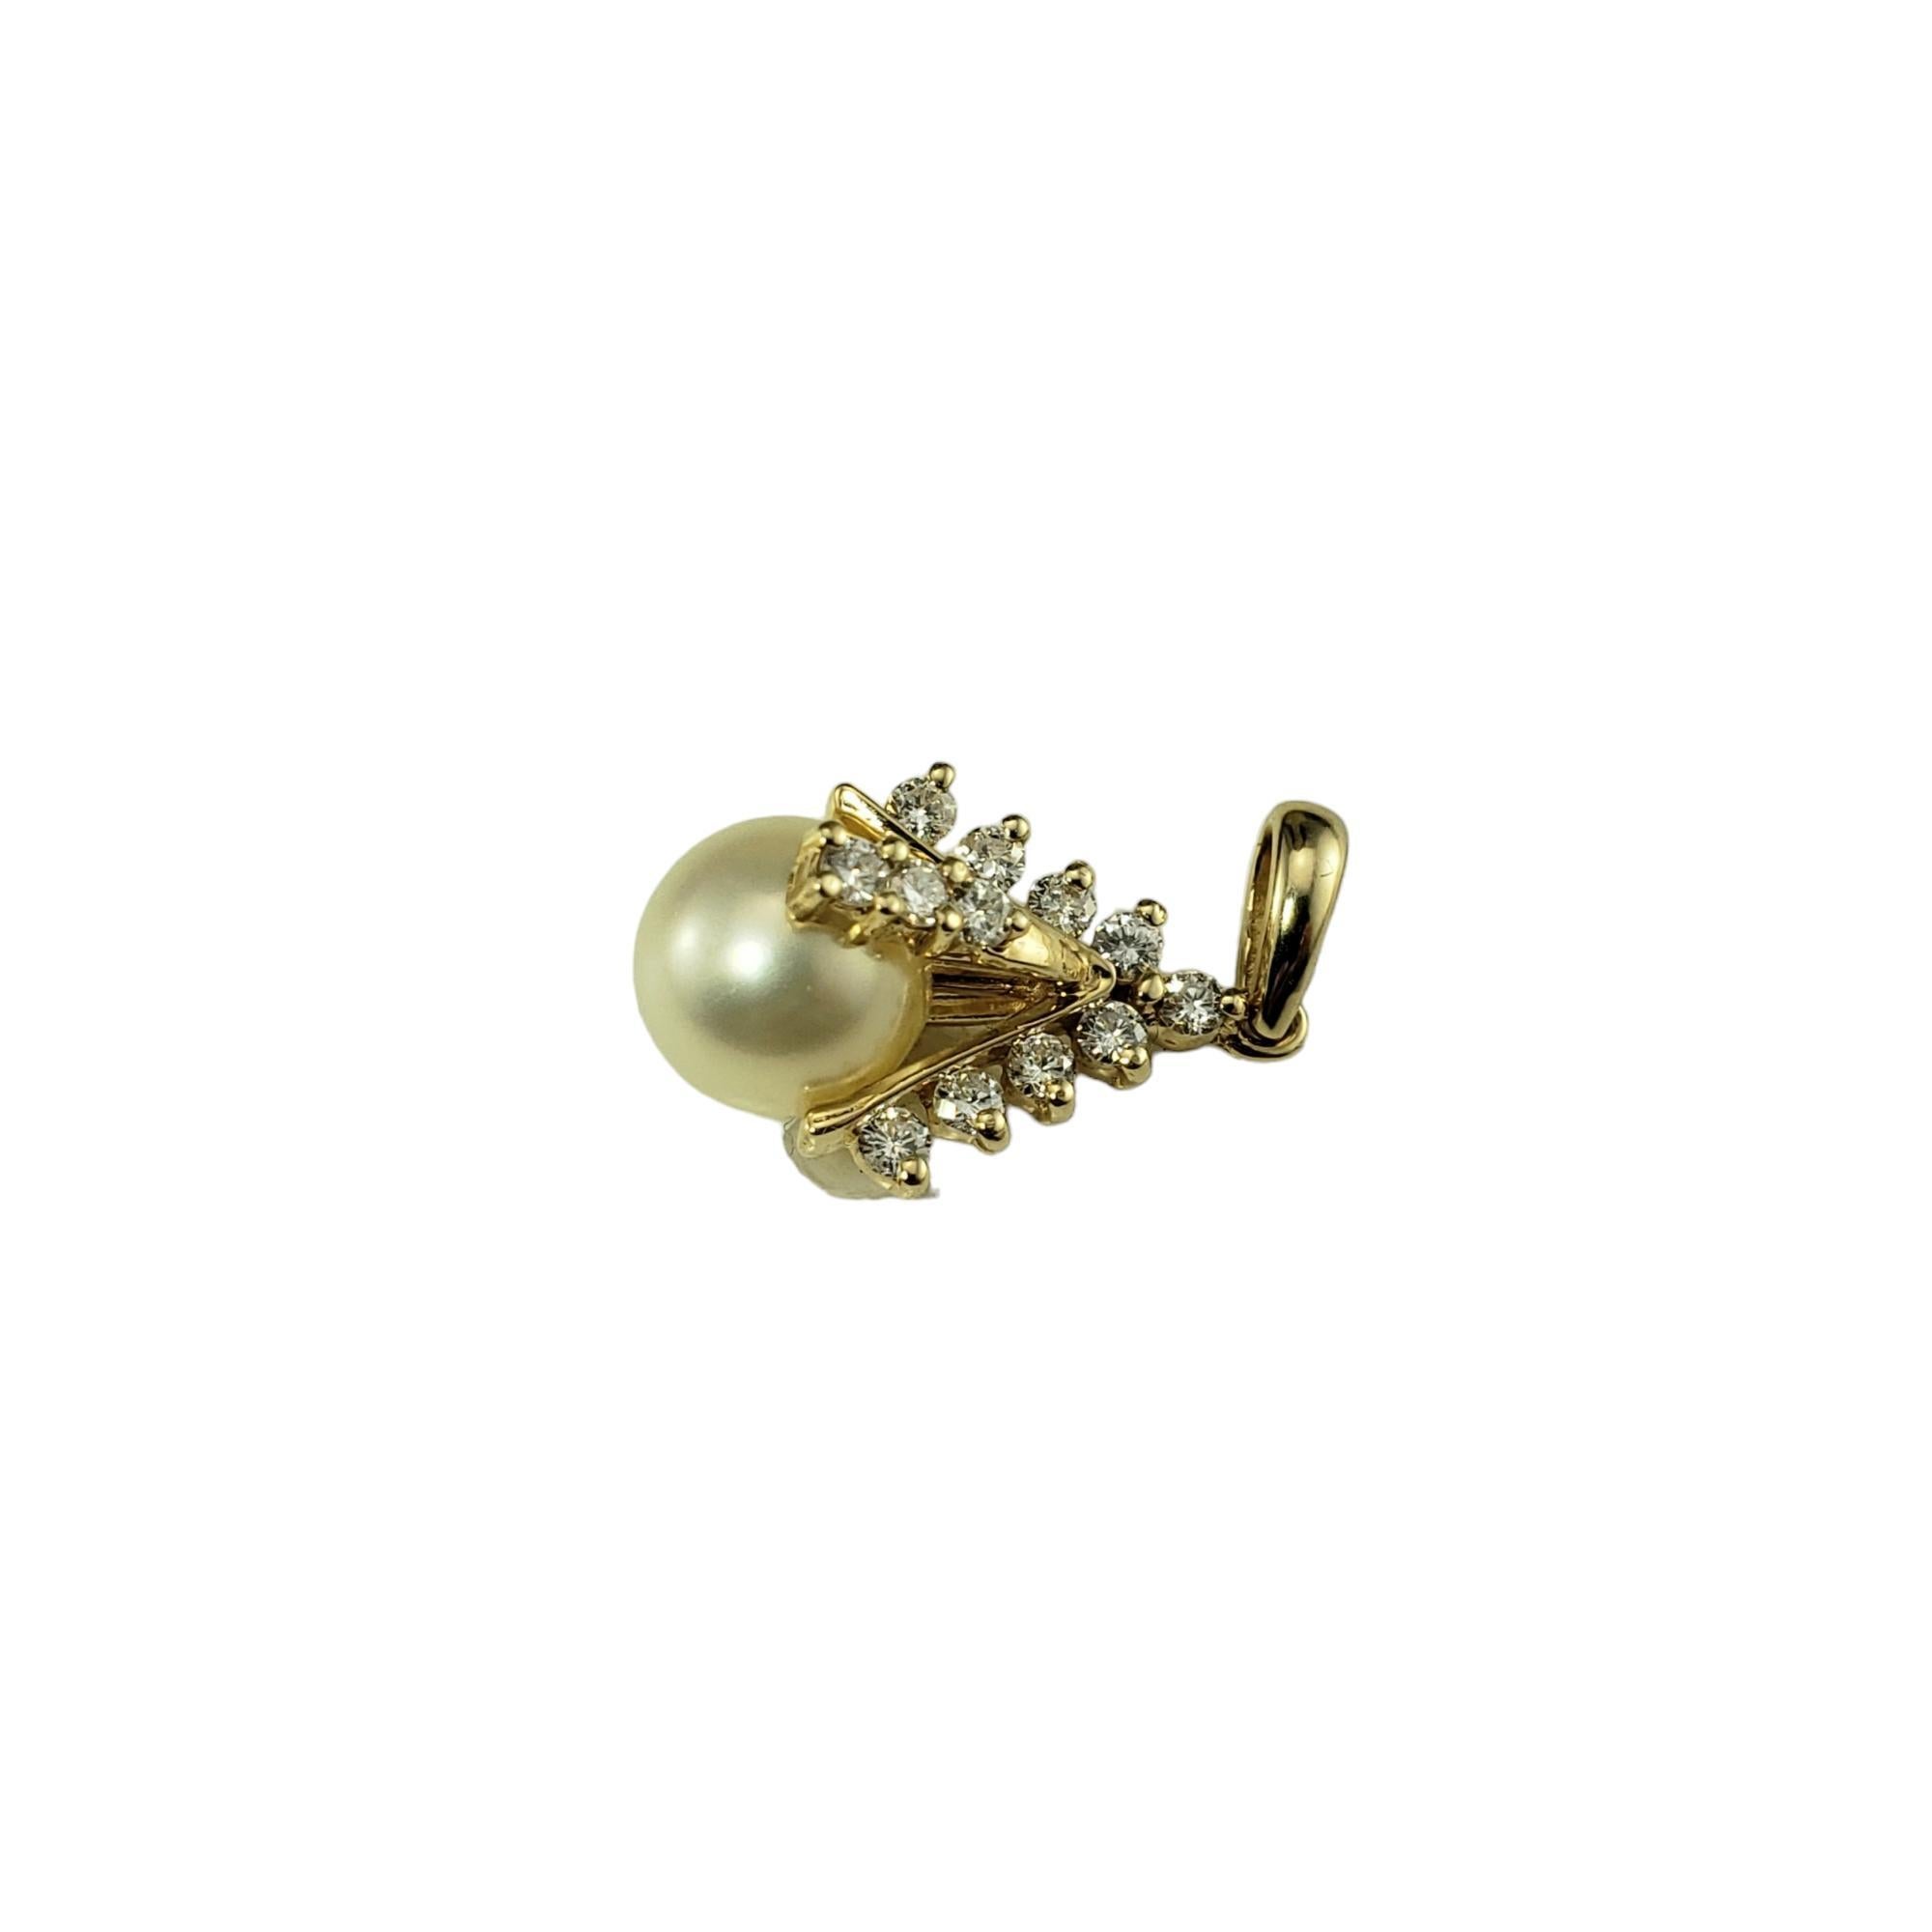 Pendentif en or jaune 14K avec perles et diamants

Cet élégant pendentif présente une perle blanche (8 mm) et 12 diamants ronds de taille brillante sertis dans de l'or jaune 14K aux détails magnifiques.

Poids total approximatif des diamants : 24